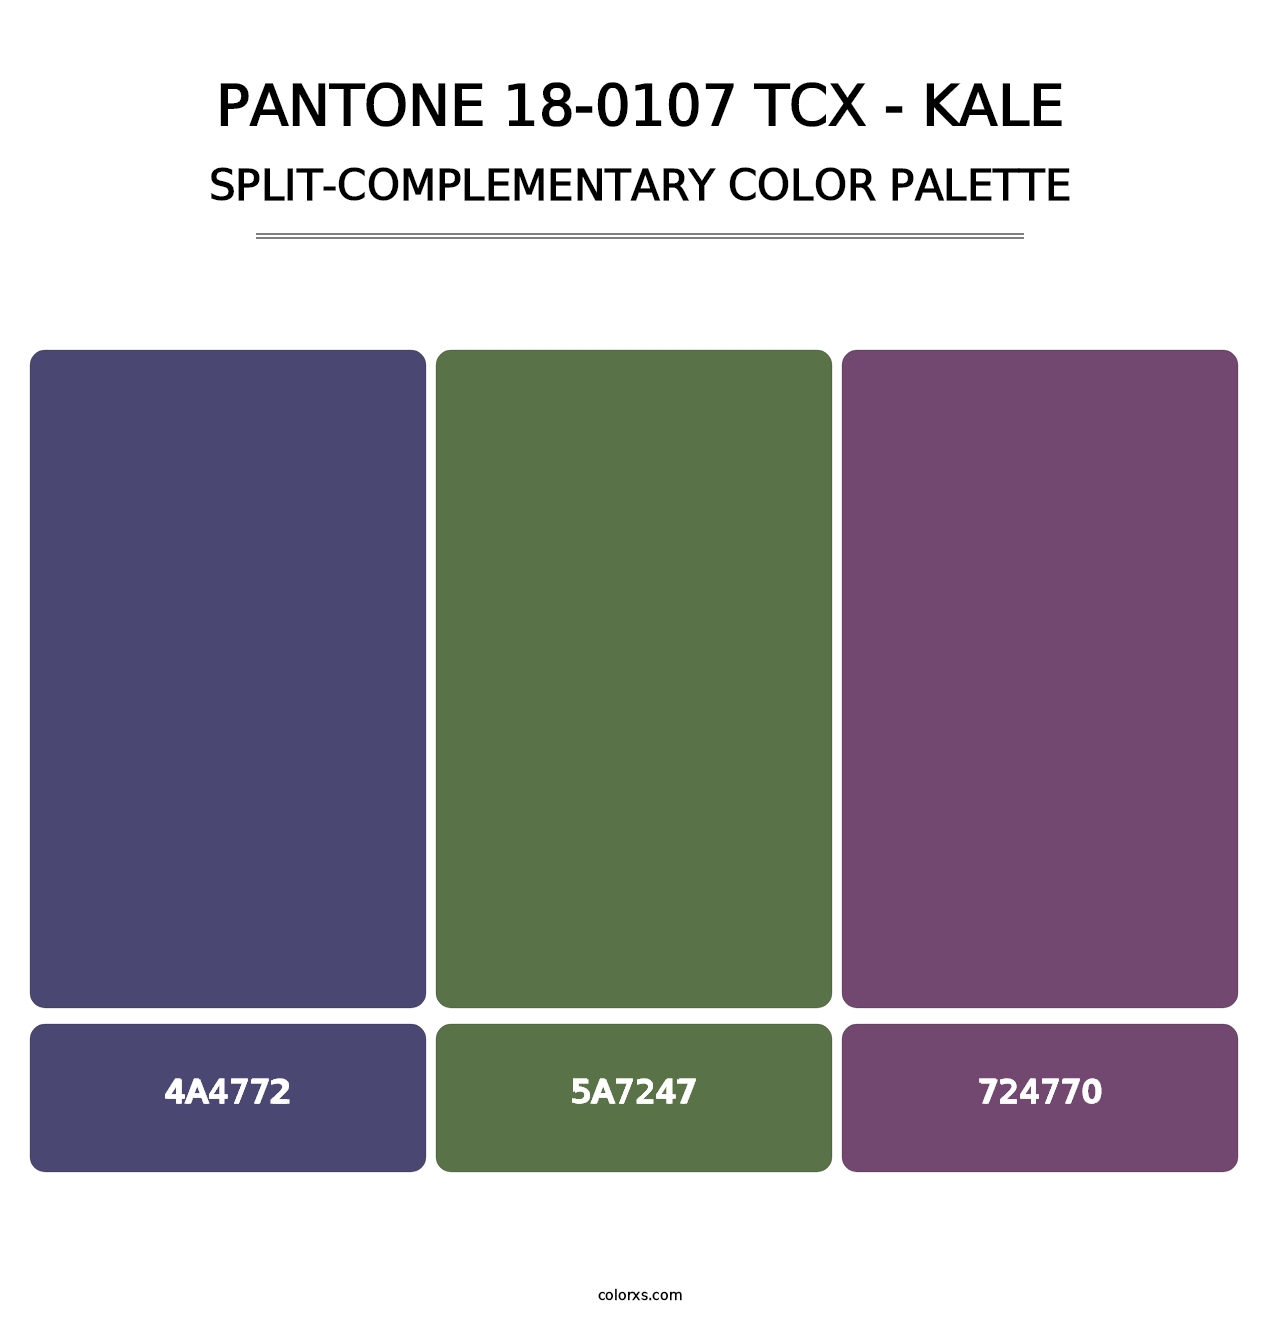 PANTONE 18-0107 TCX - Kale - Split-Complementary Color Palette